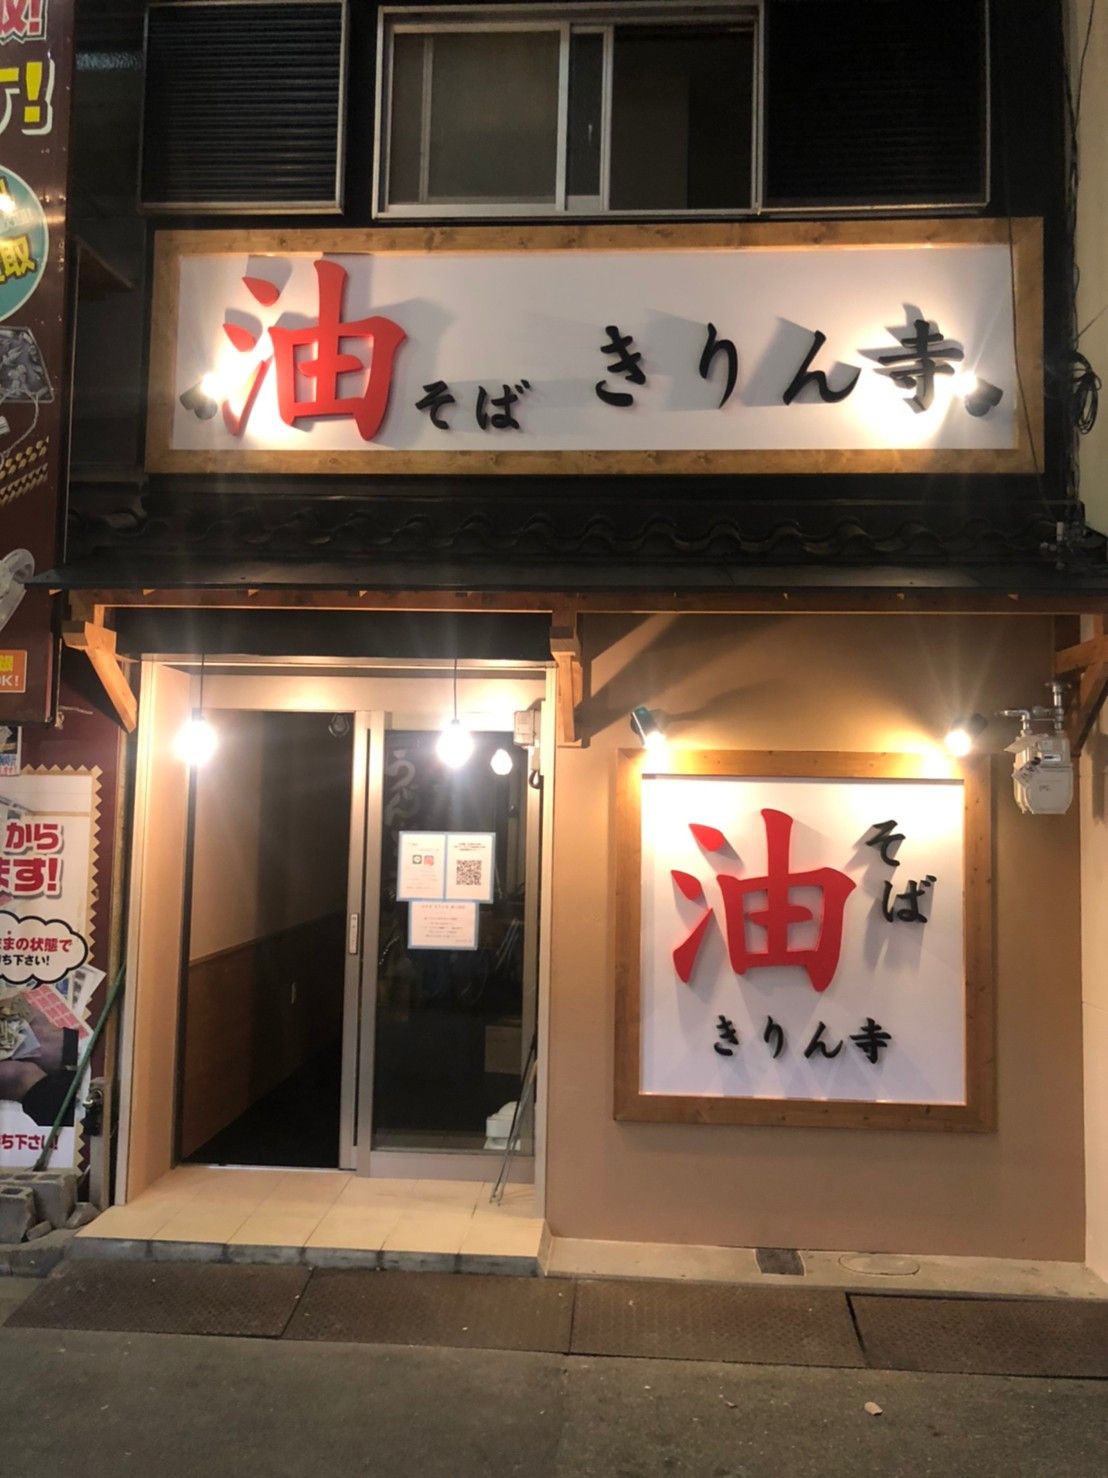 大阪府で飲食店の看板の施工をしました。【大阪・株式会社創基】